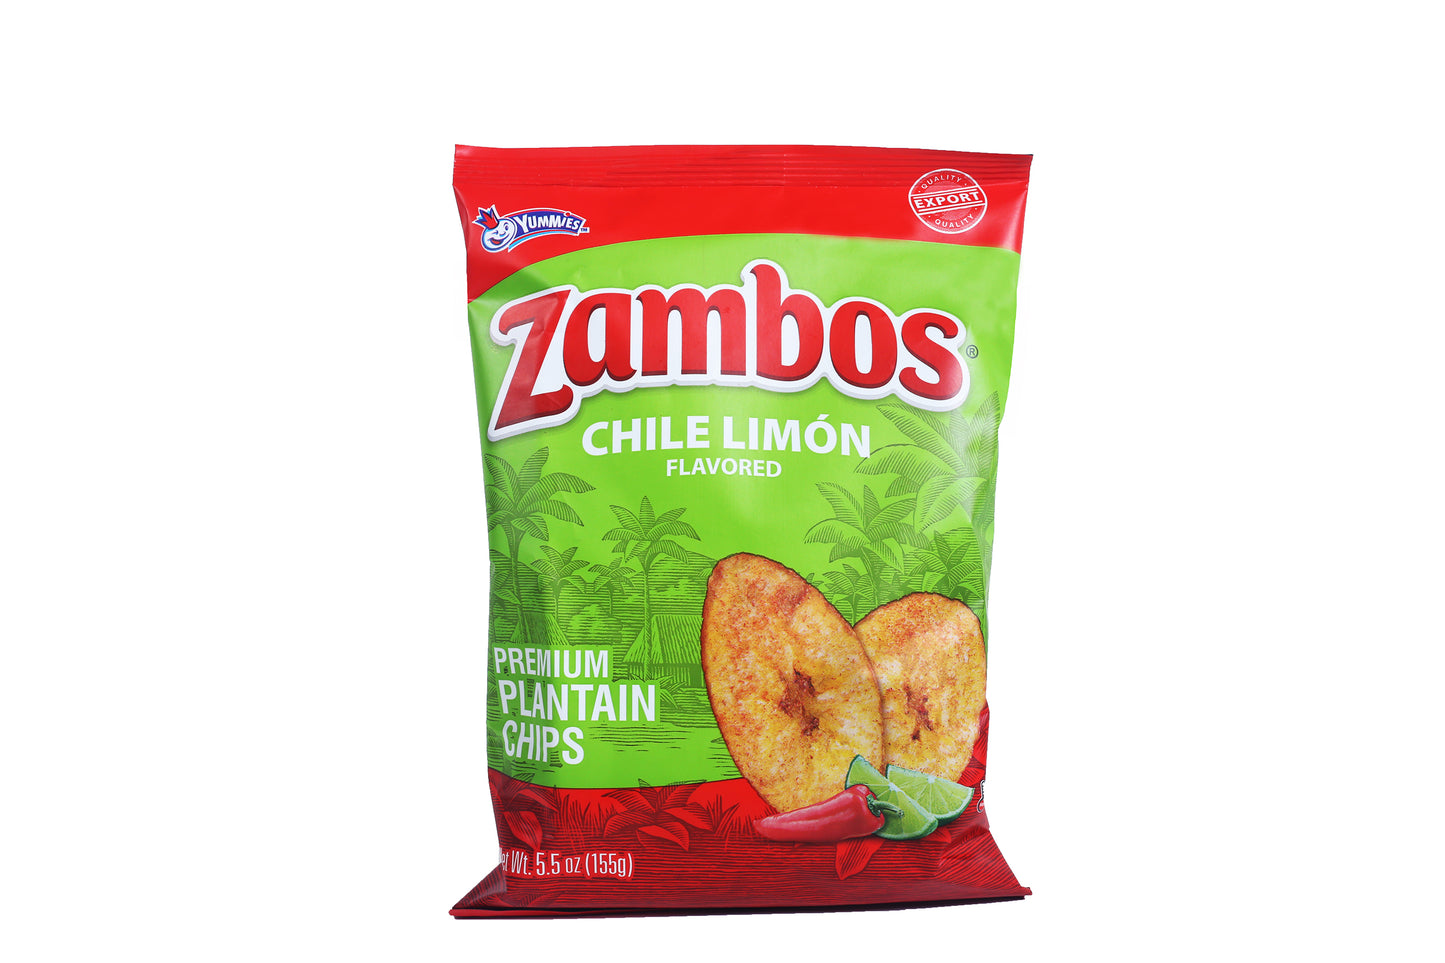 Zambo Chile Limon 5.5 oz